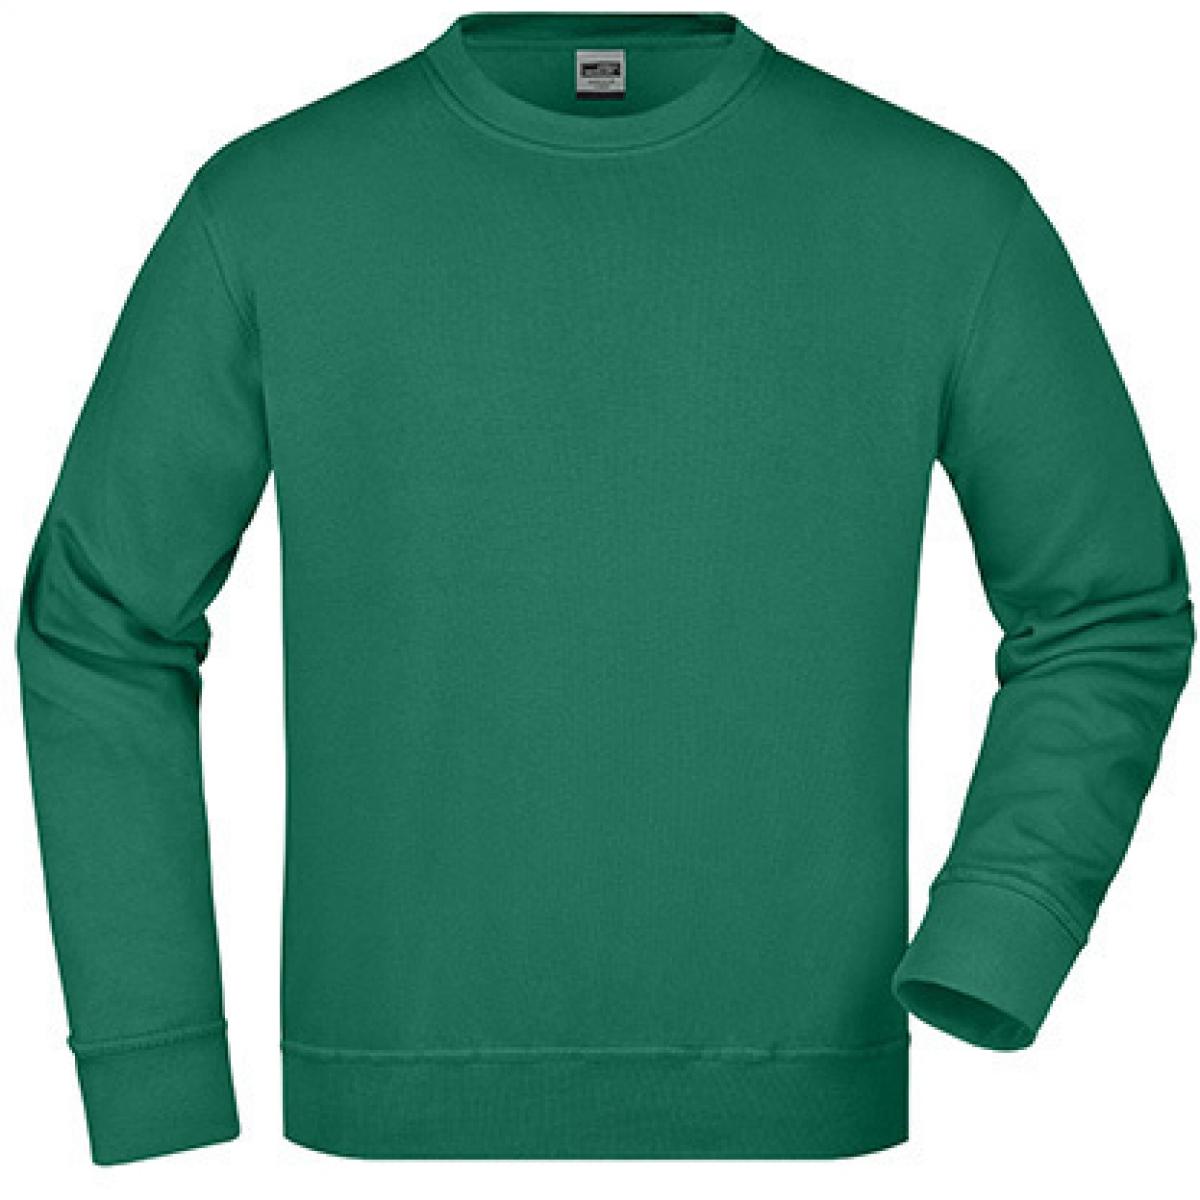 Hersteller: James+Nicholson Herstellernummer: JN840 Artikelbezeichnung: Workwear Sweatshirt / Waschbar bis 60C Farbe: Dark Green